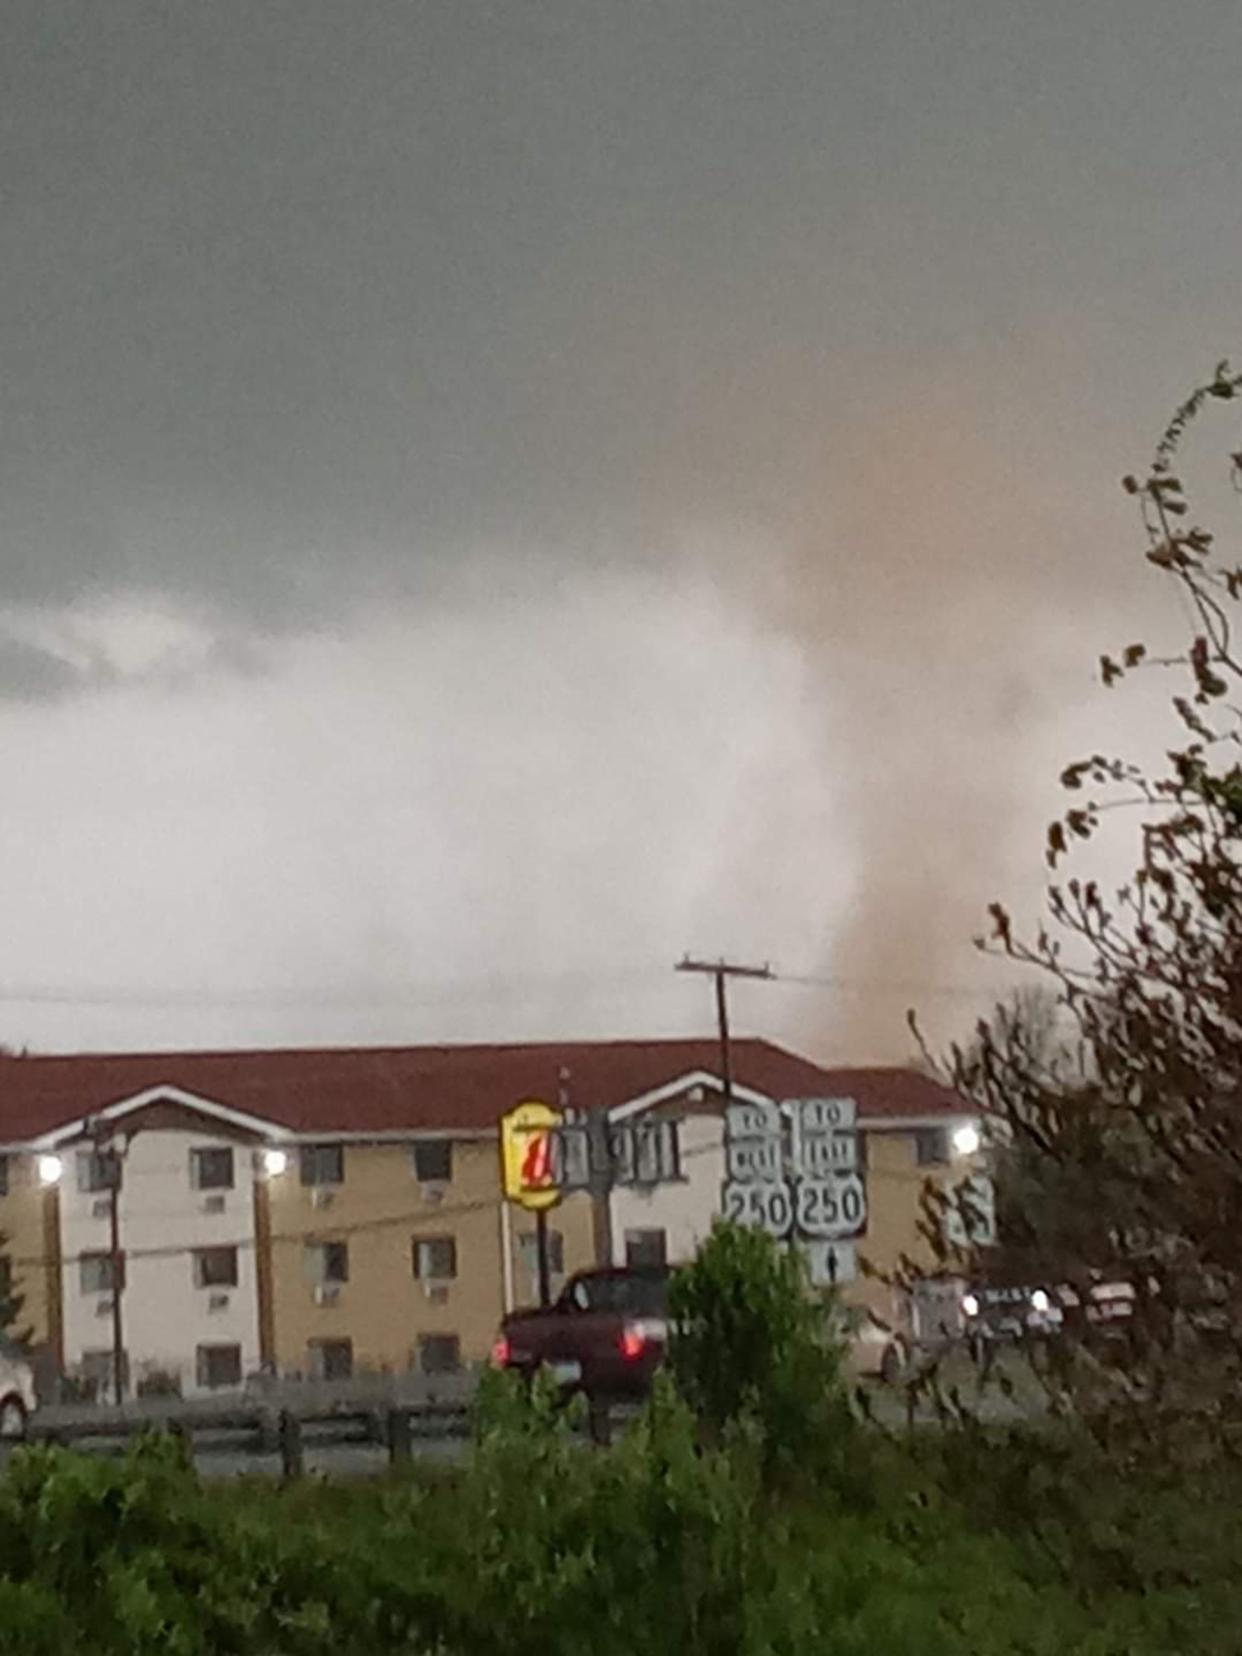 Photo of what looks like a tornado was taken in Waynesboro.